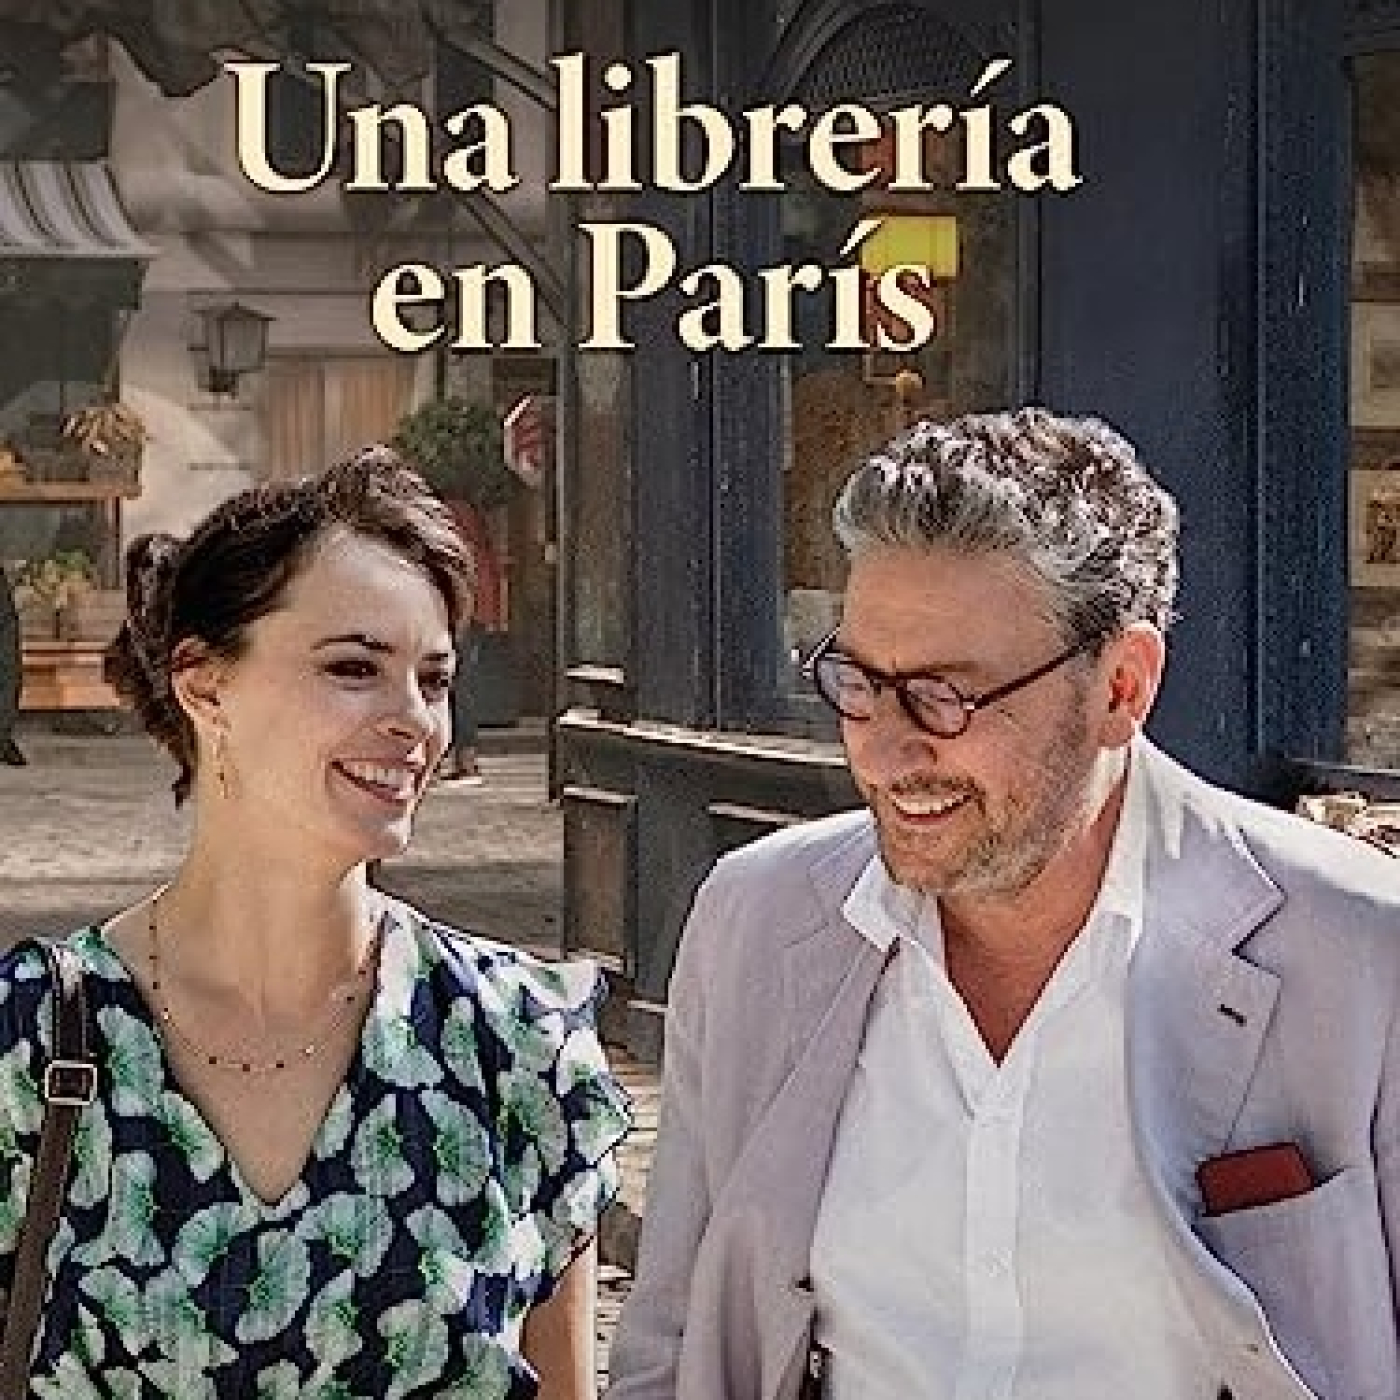 UNA LIBRERIA EN PARIS (2021) #Romance #Drama #peliculas #audesc #podcast